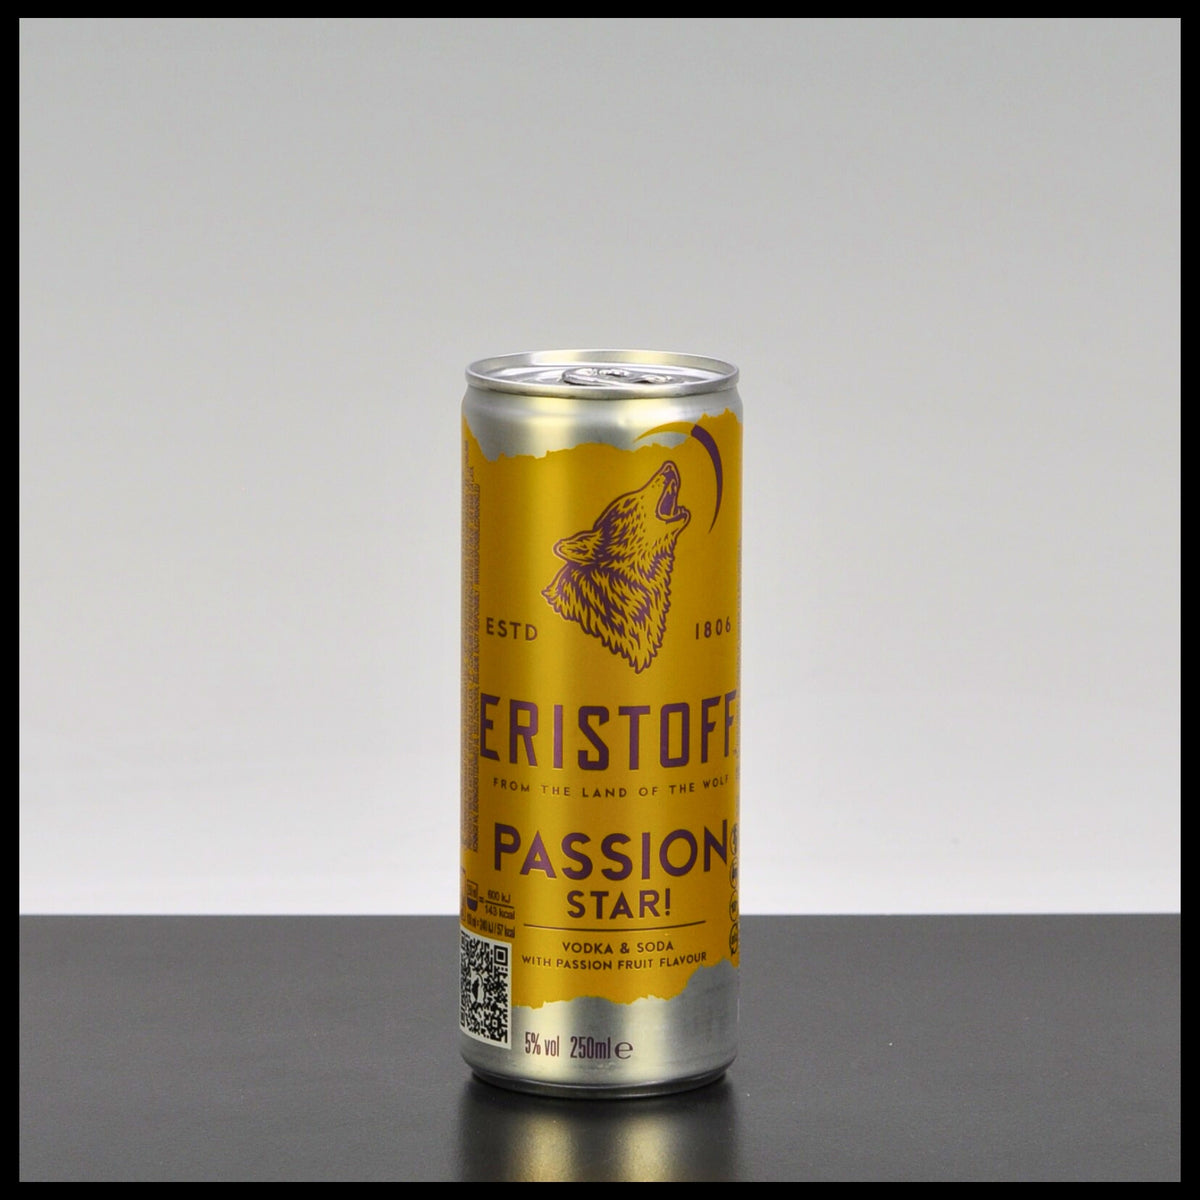 Eristoff Passion Star 0,25L - 5% Vol.